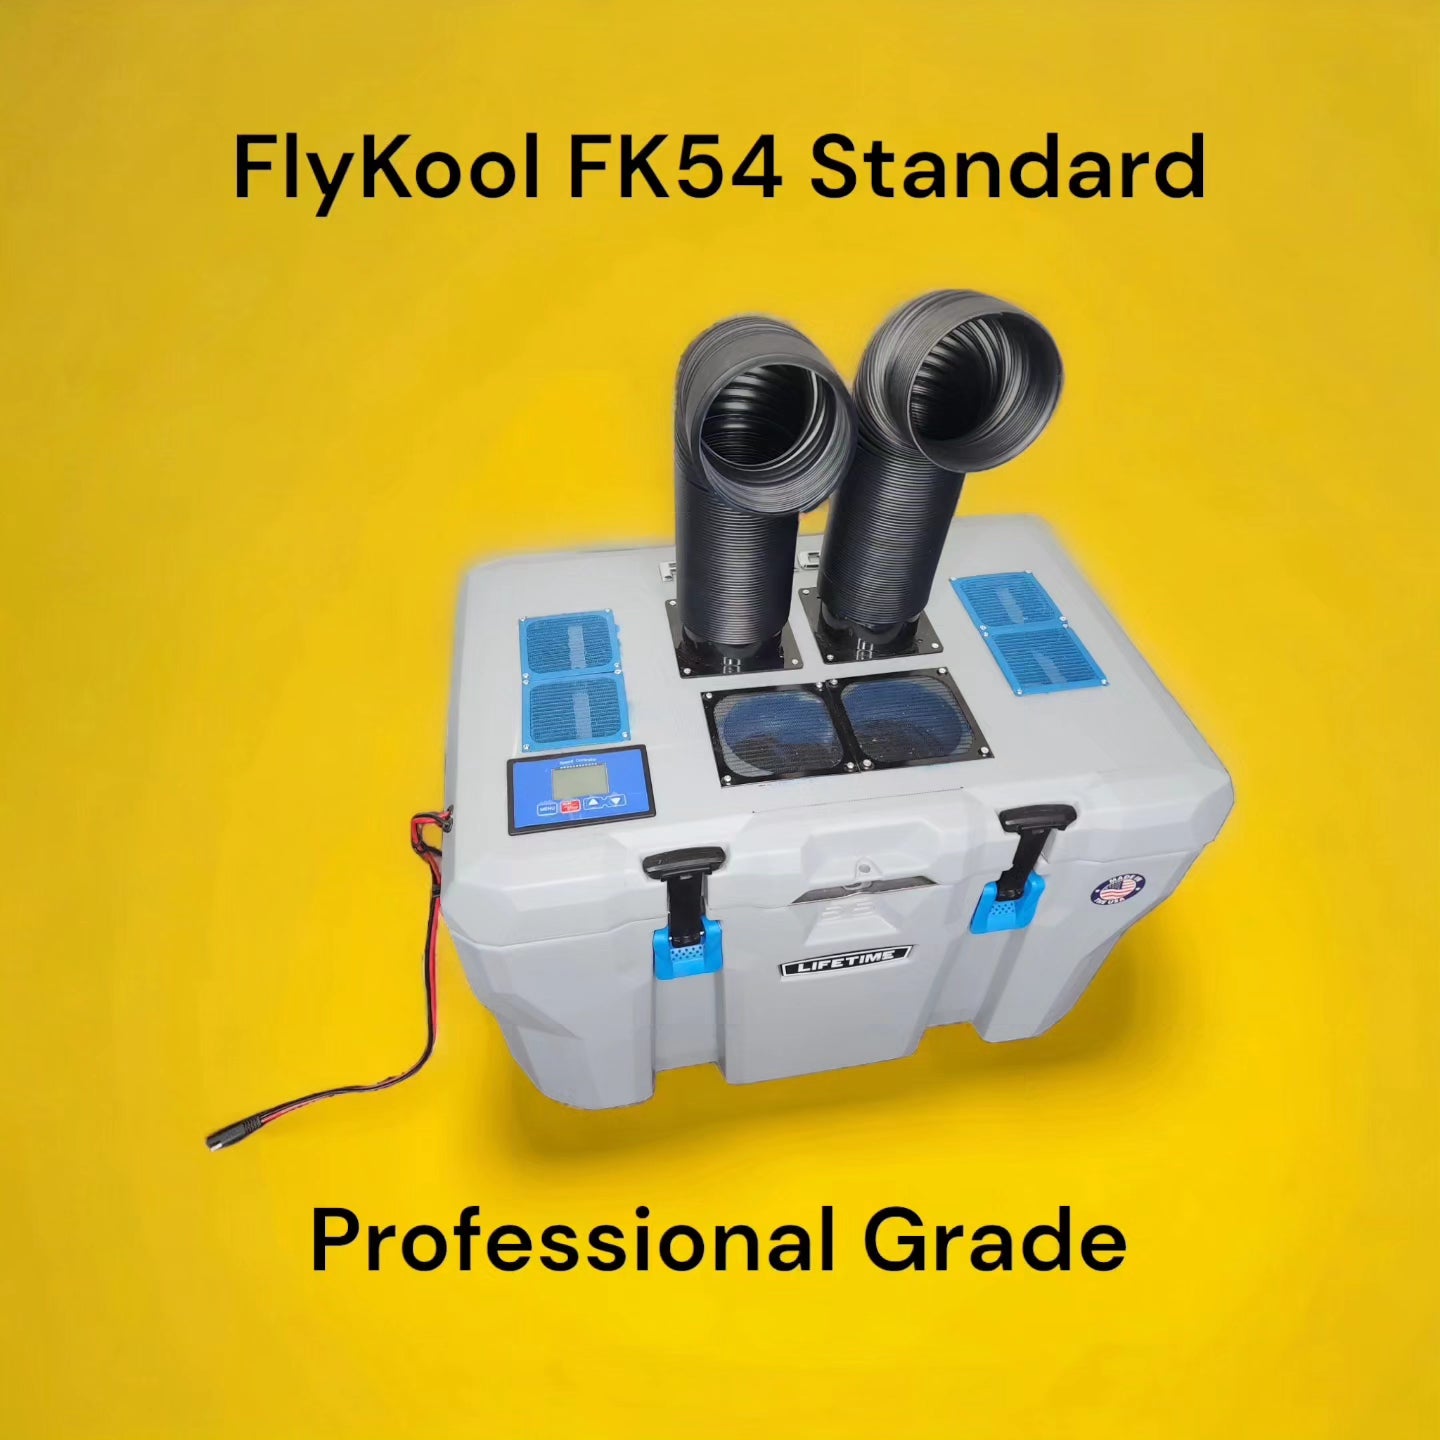 FlyKool FK54 Standard